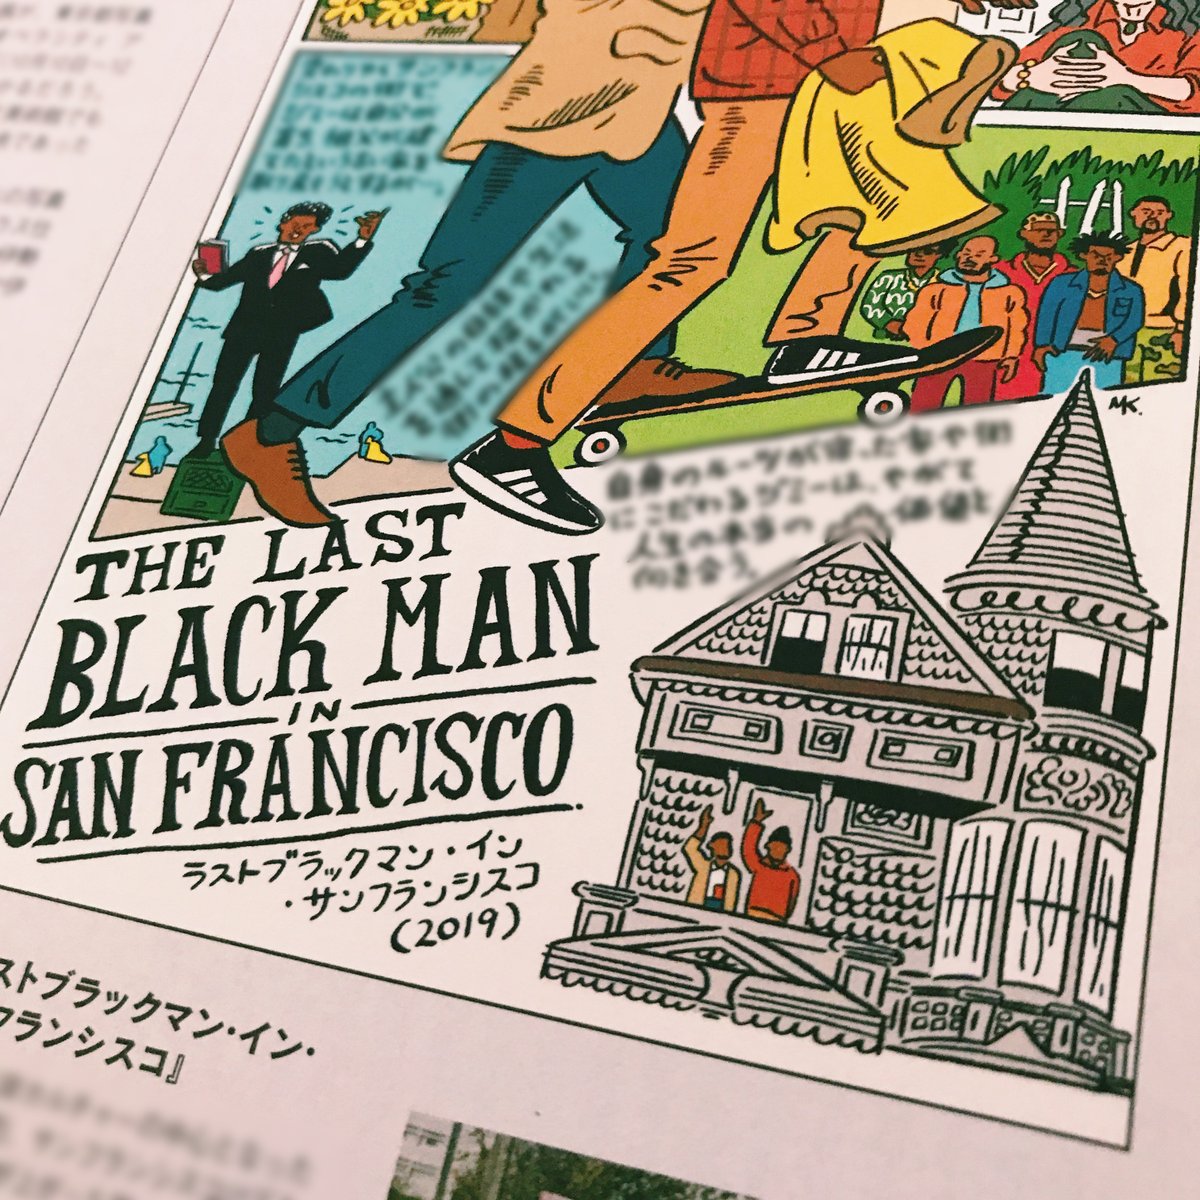 「SPUR」11月号では10月9日公開予定『ラストブラックマン・イン・サンフランシスコ』を紹介しています。『ゴーストワールド』が好きなひとにも勧めたい作品です。 